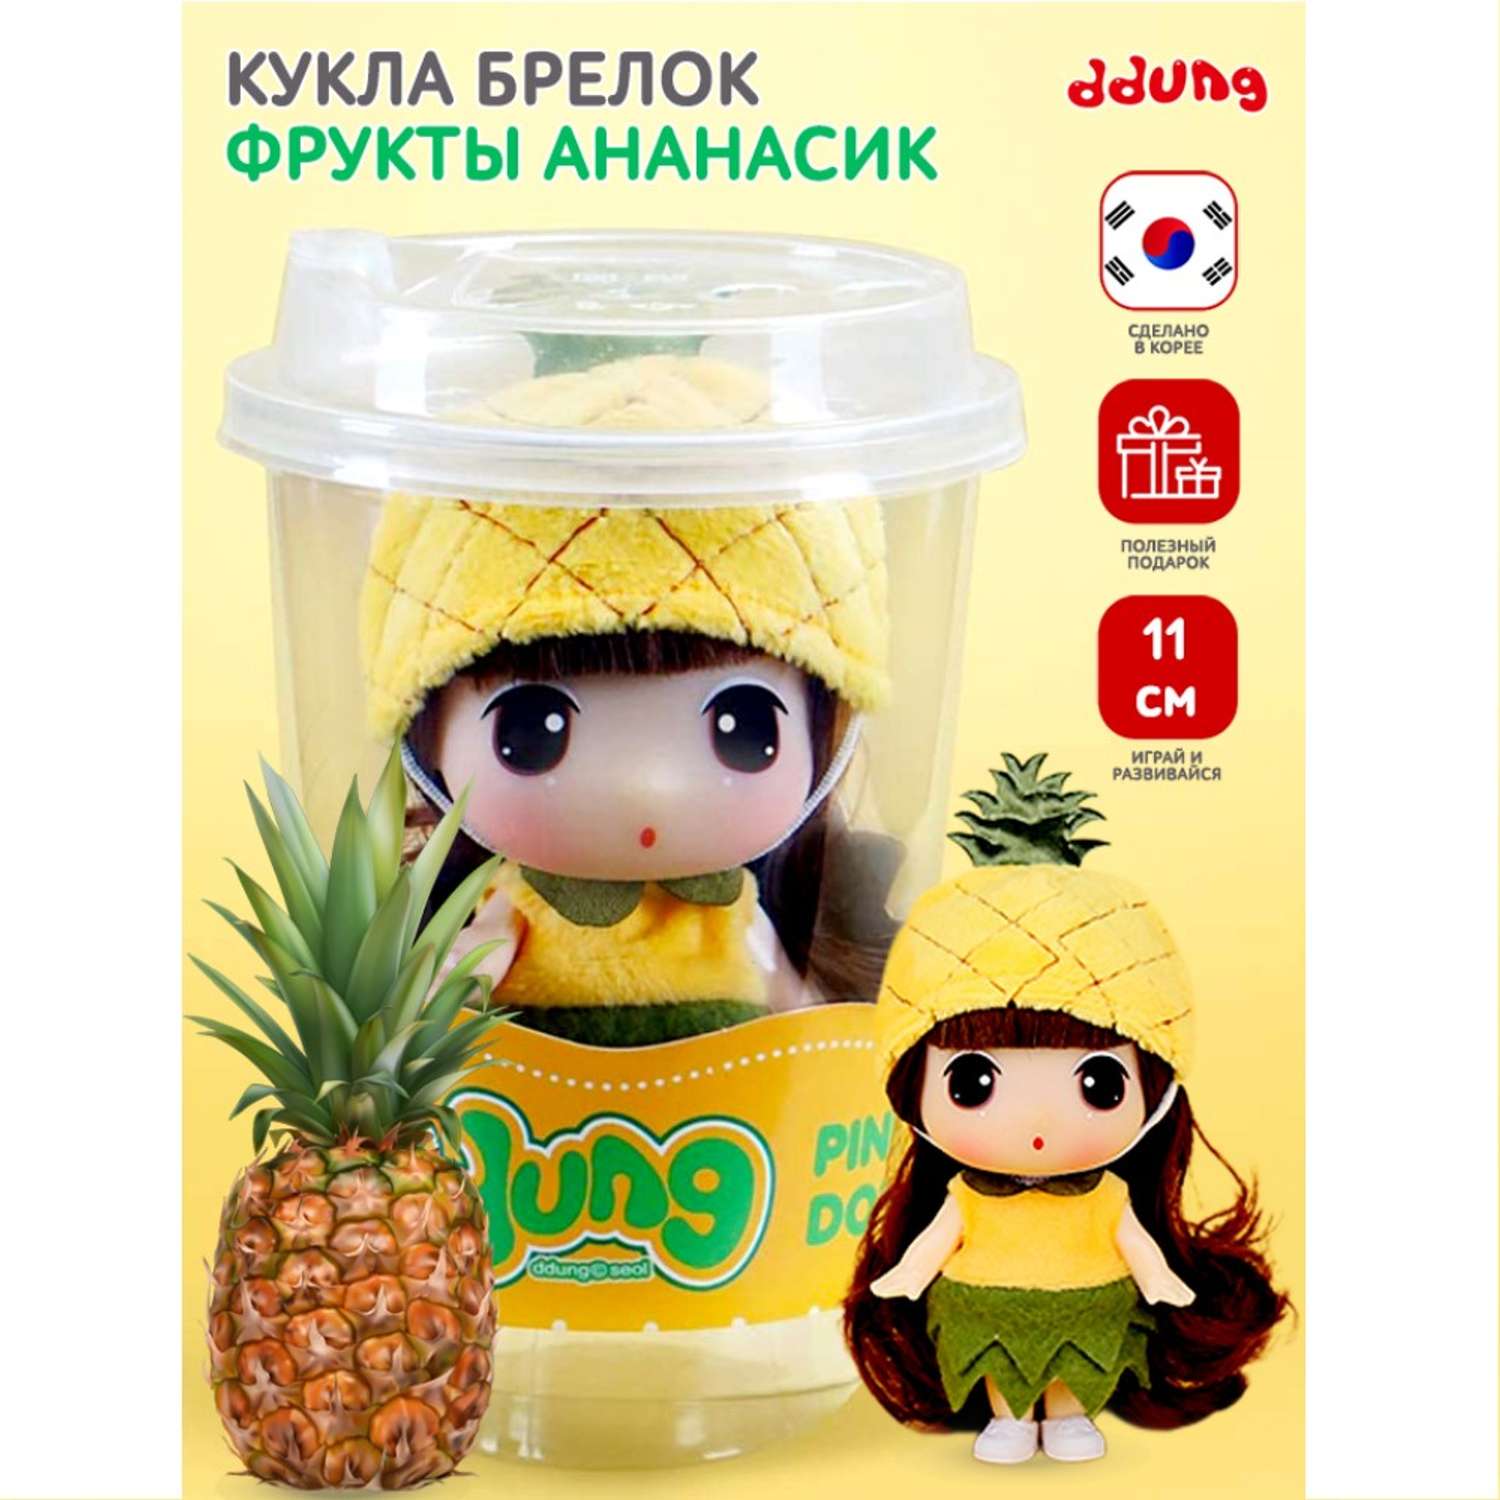 Уникальная коллекционная кукла DDung ананас пупс из серии фрукты и ягоды FDE0905-5 - фото 2